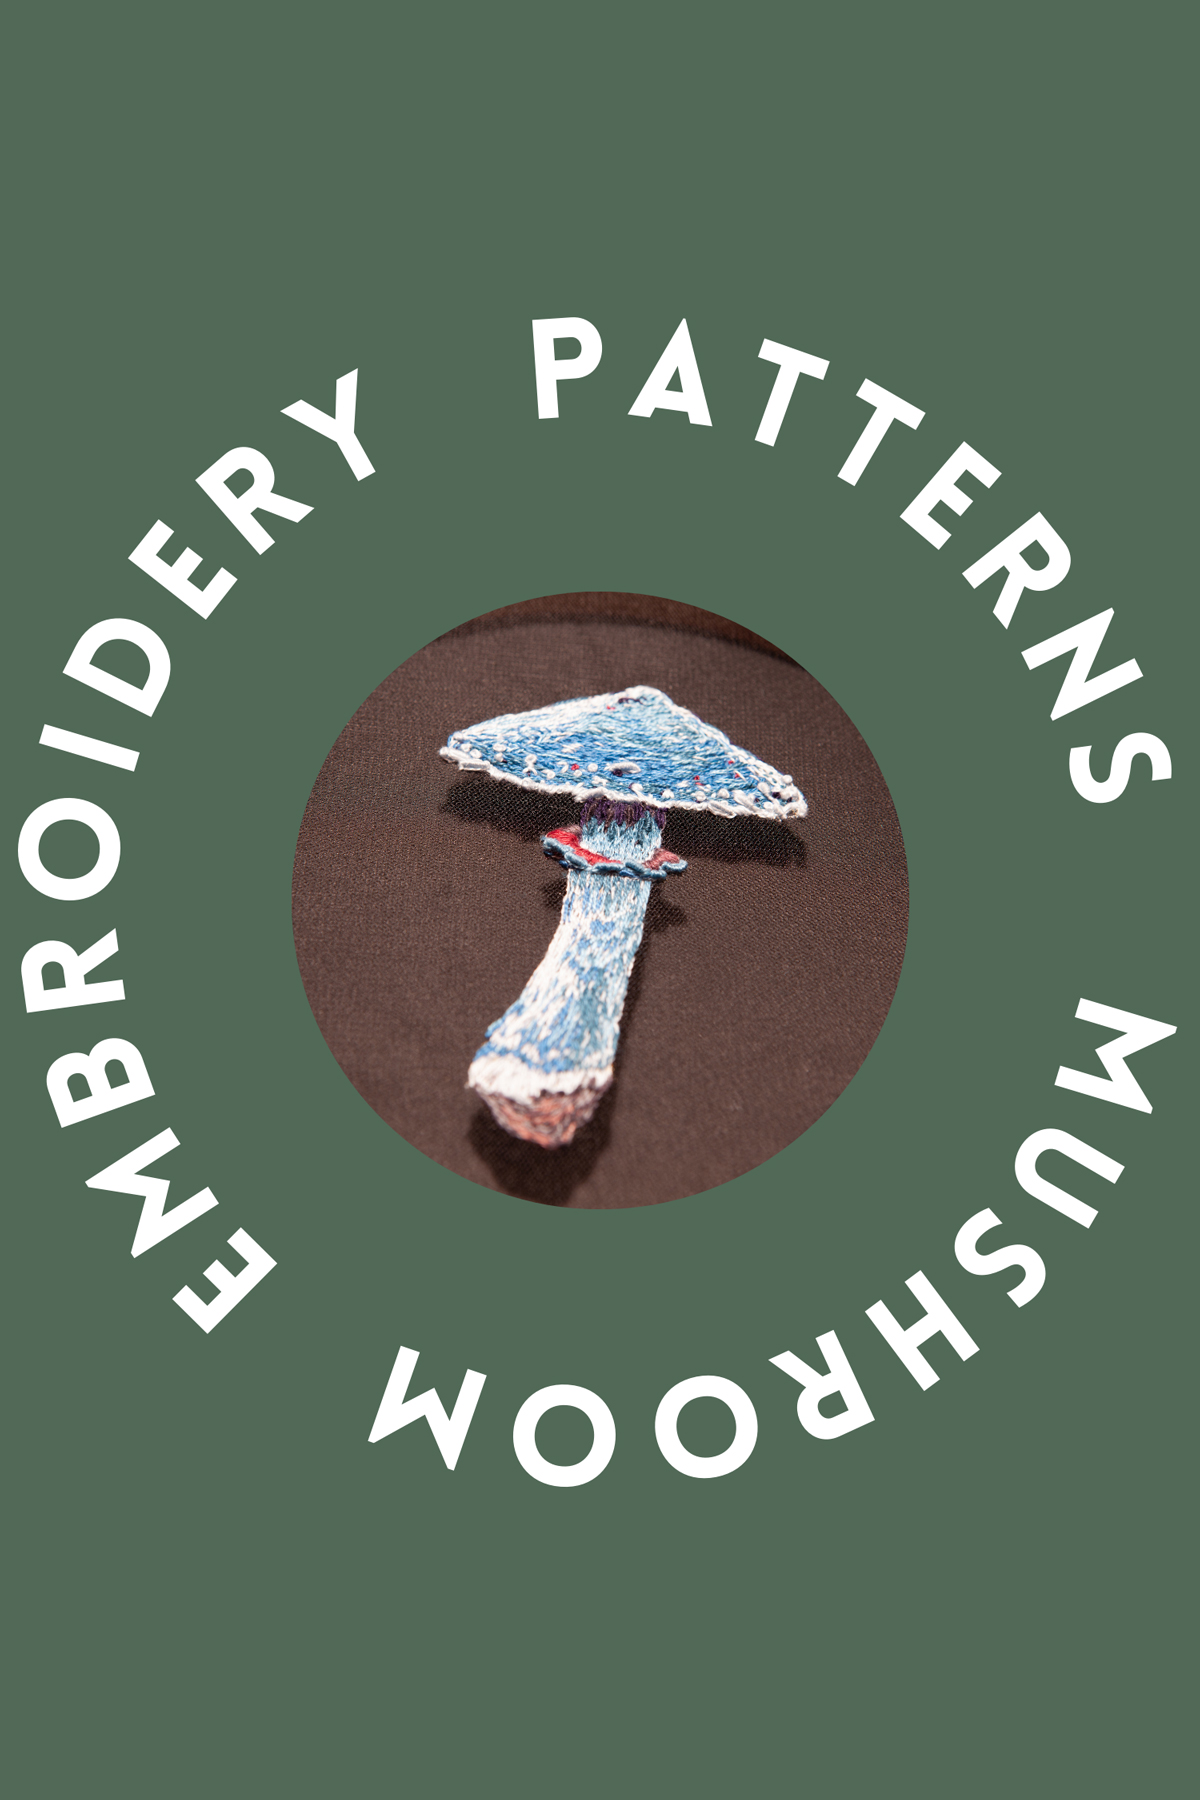 Mushroom embroidery patterns & ideas